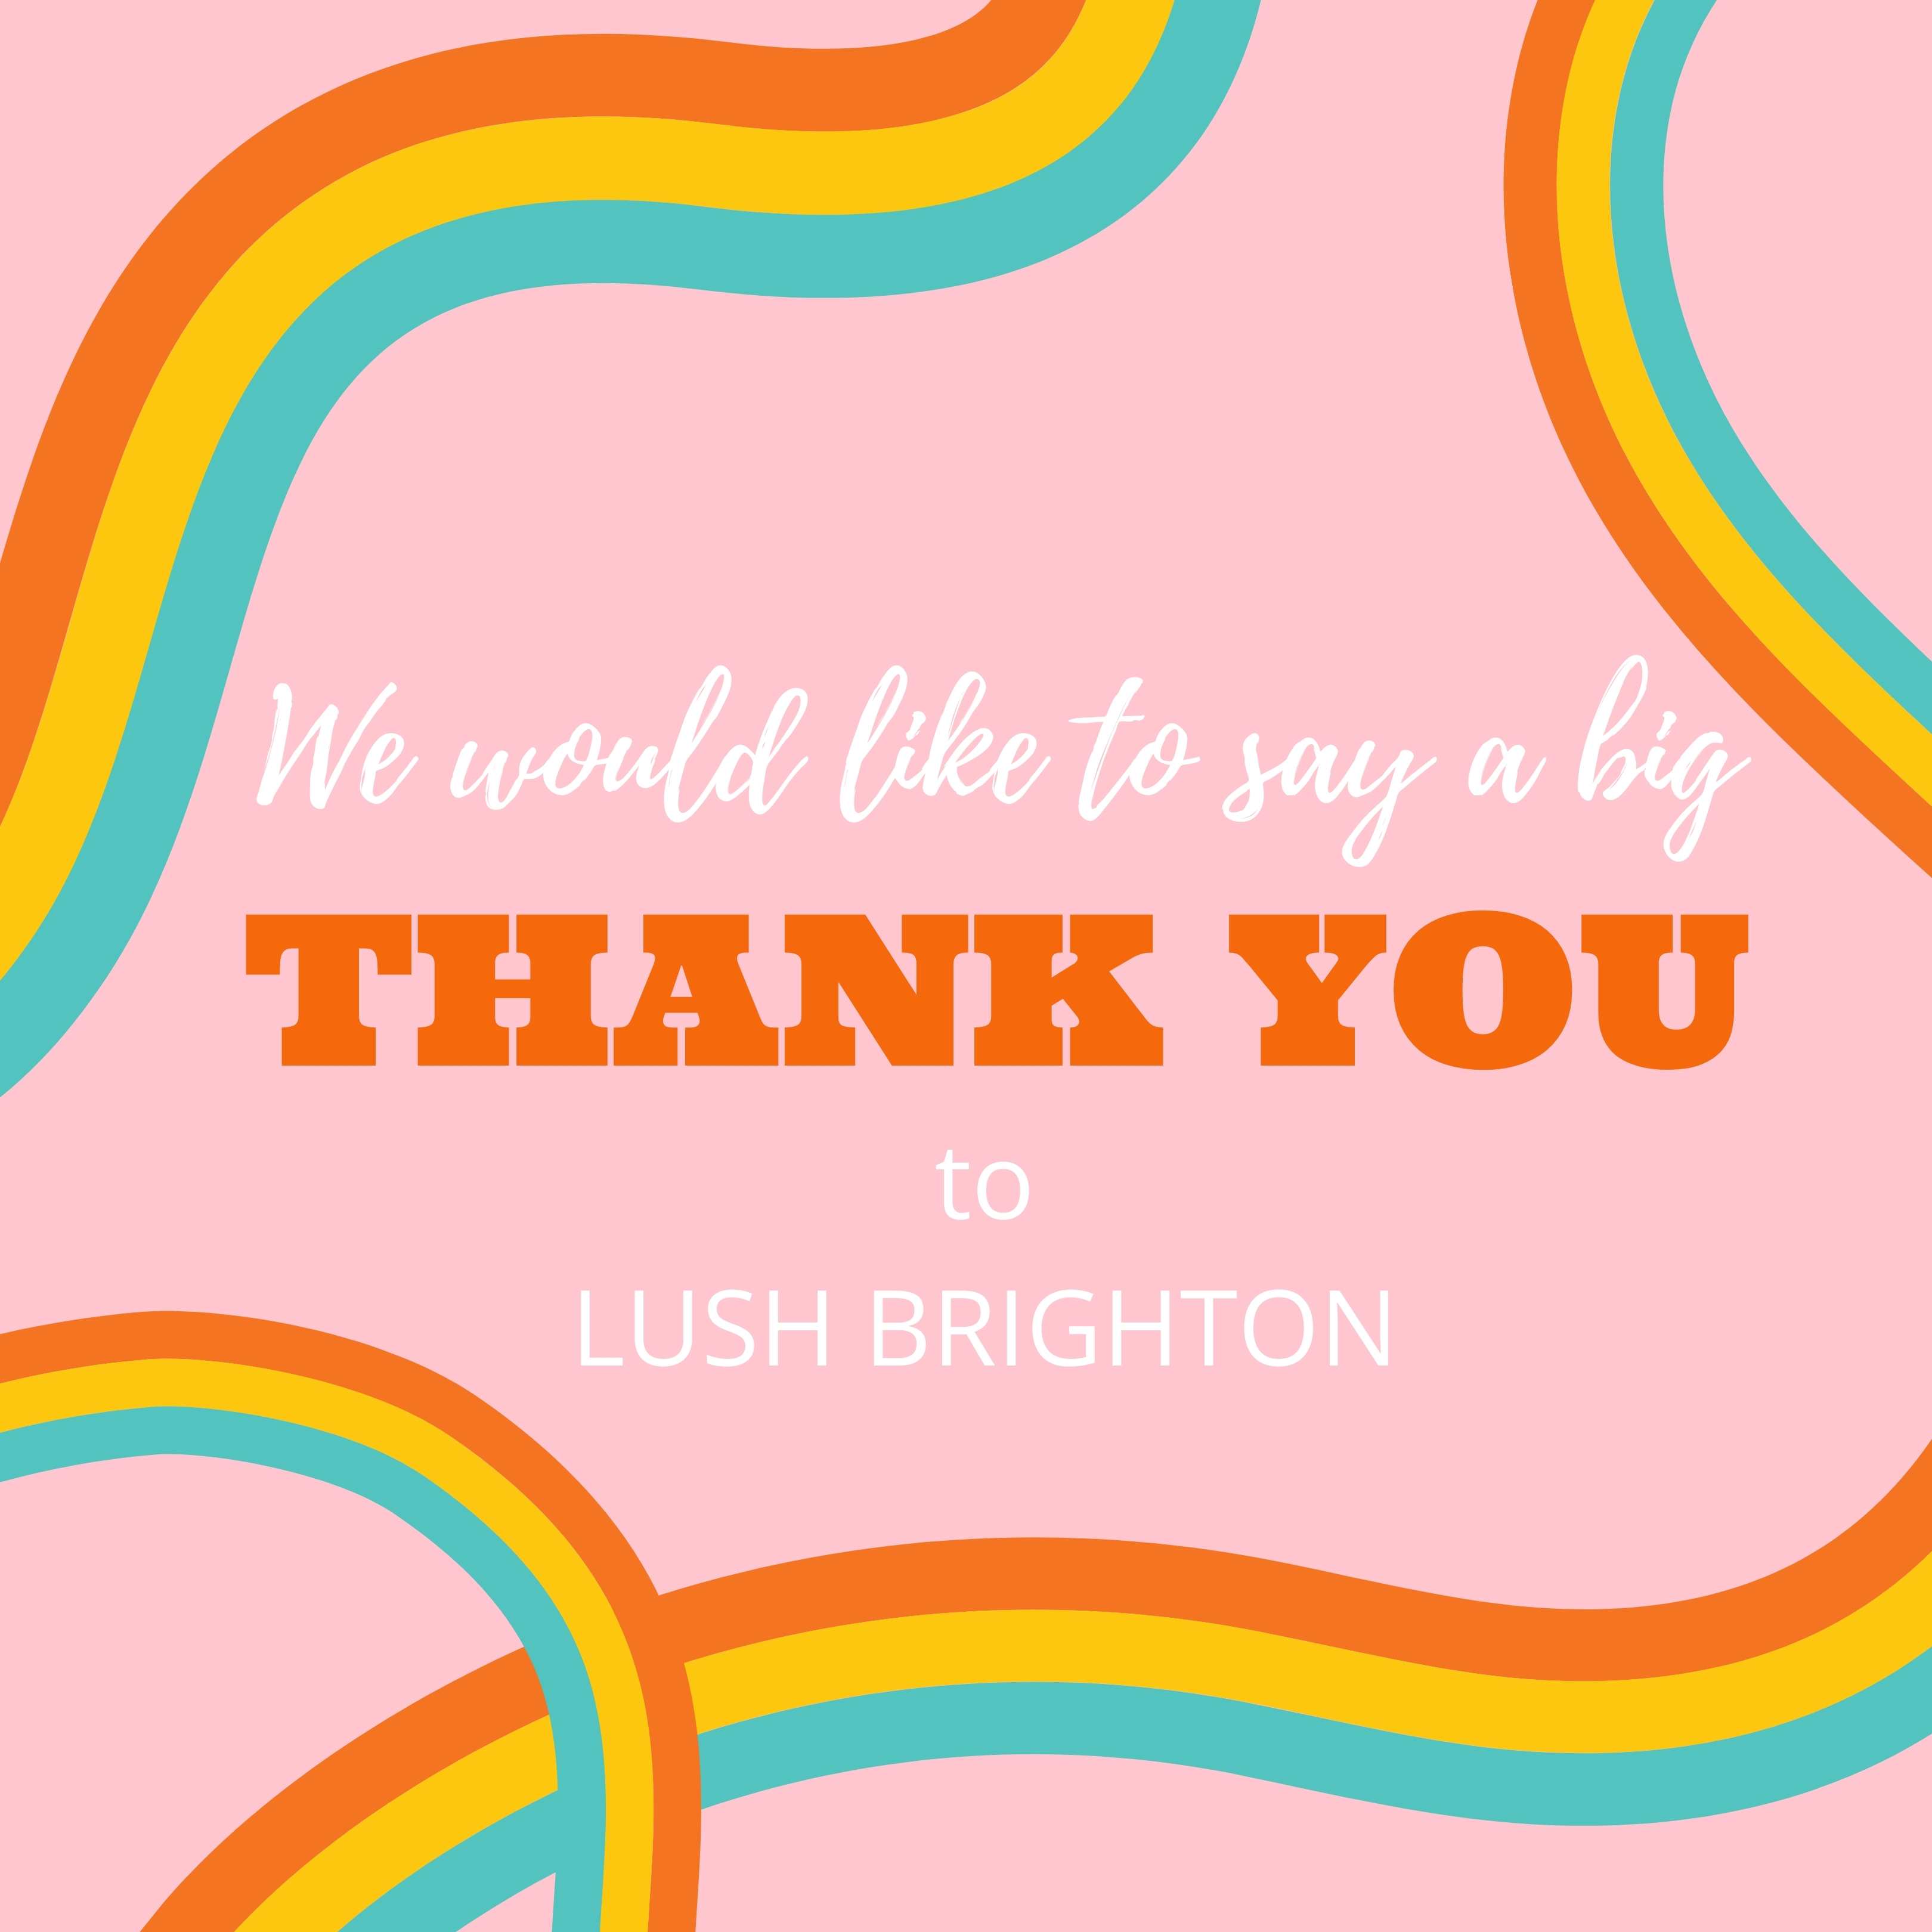 Thank you to LUSH